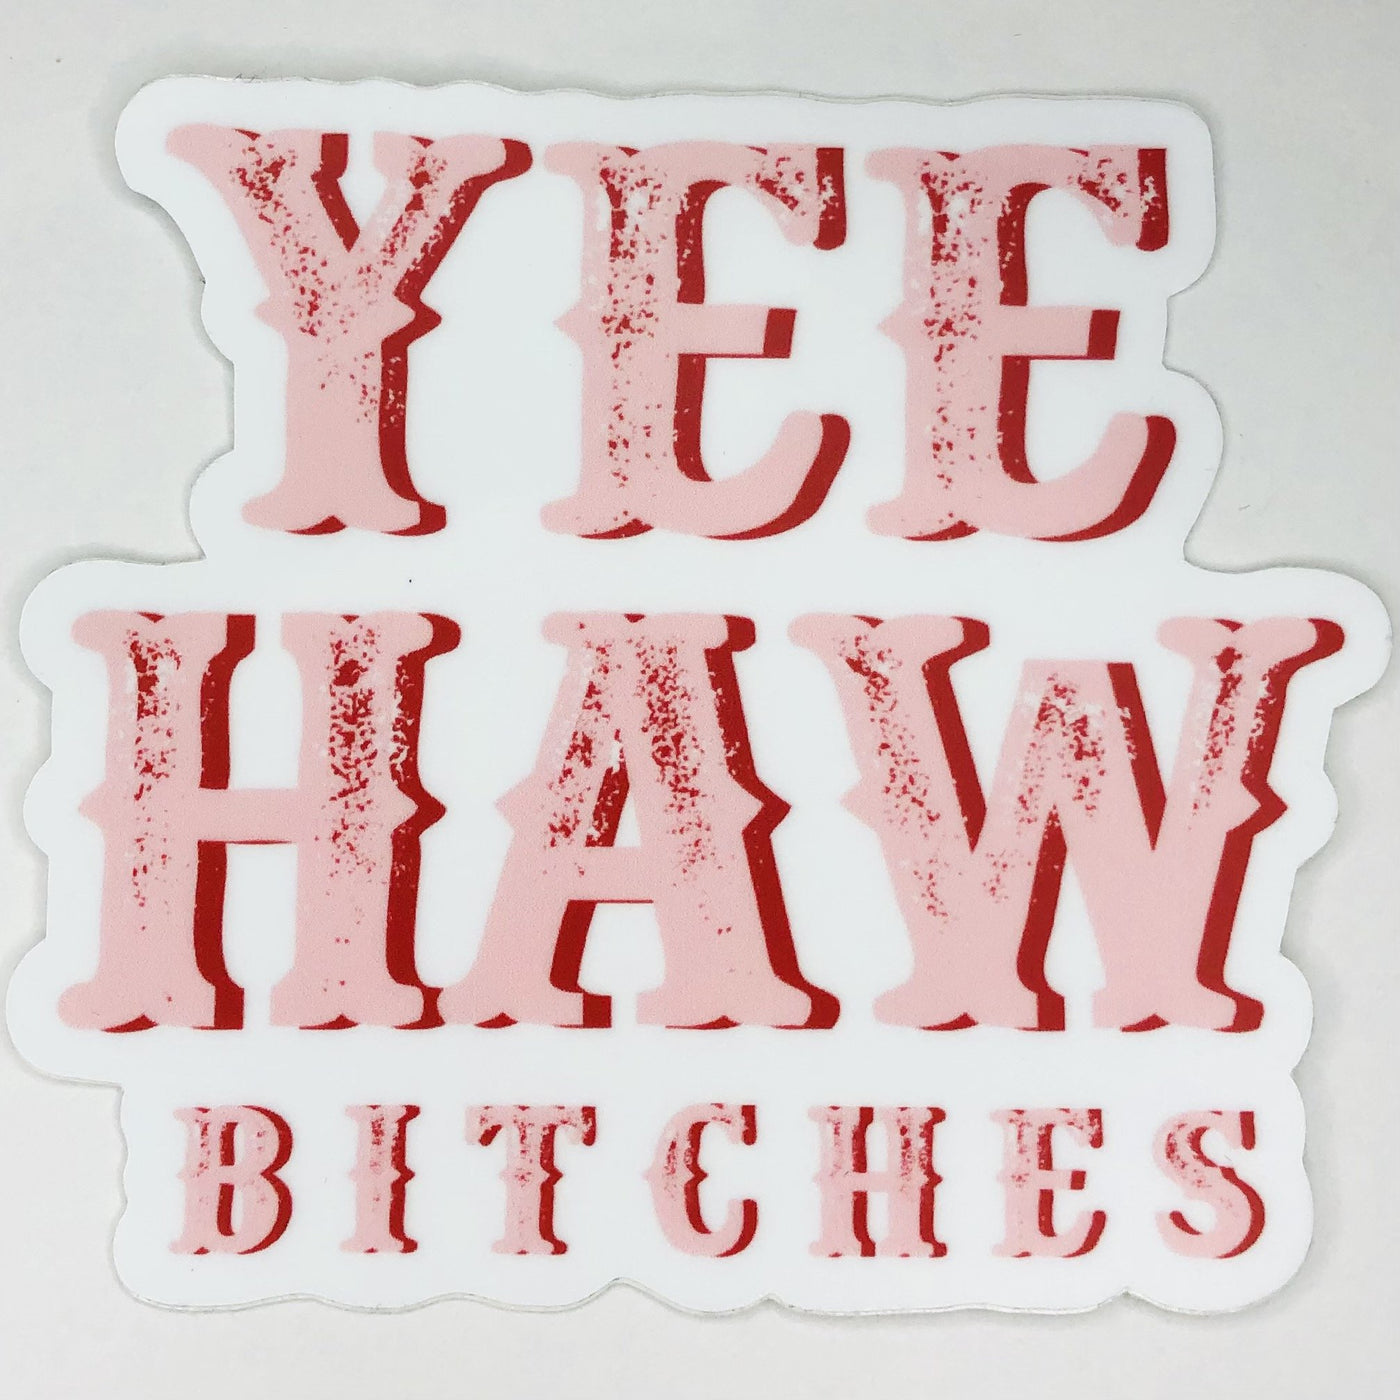 Yee Haw Bitches Sticker